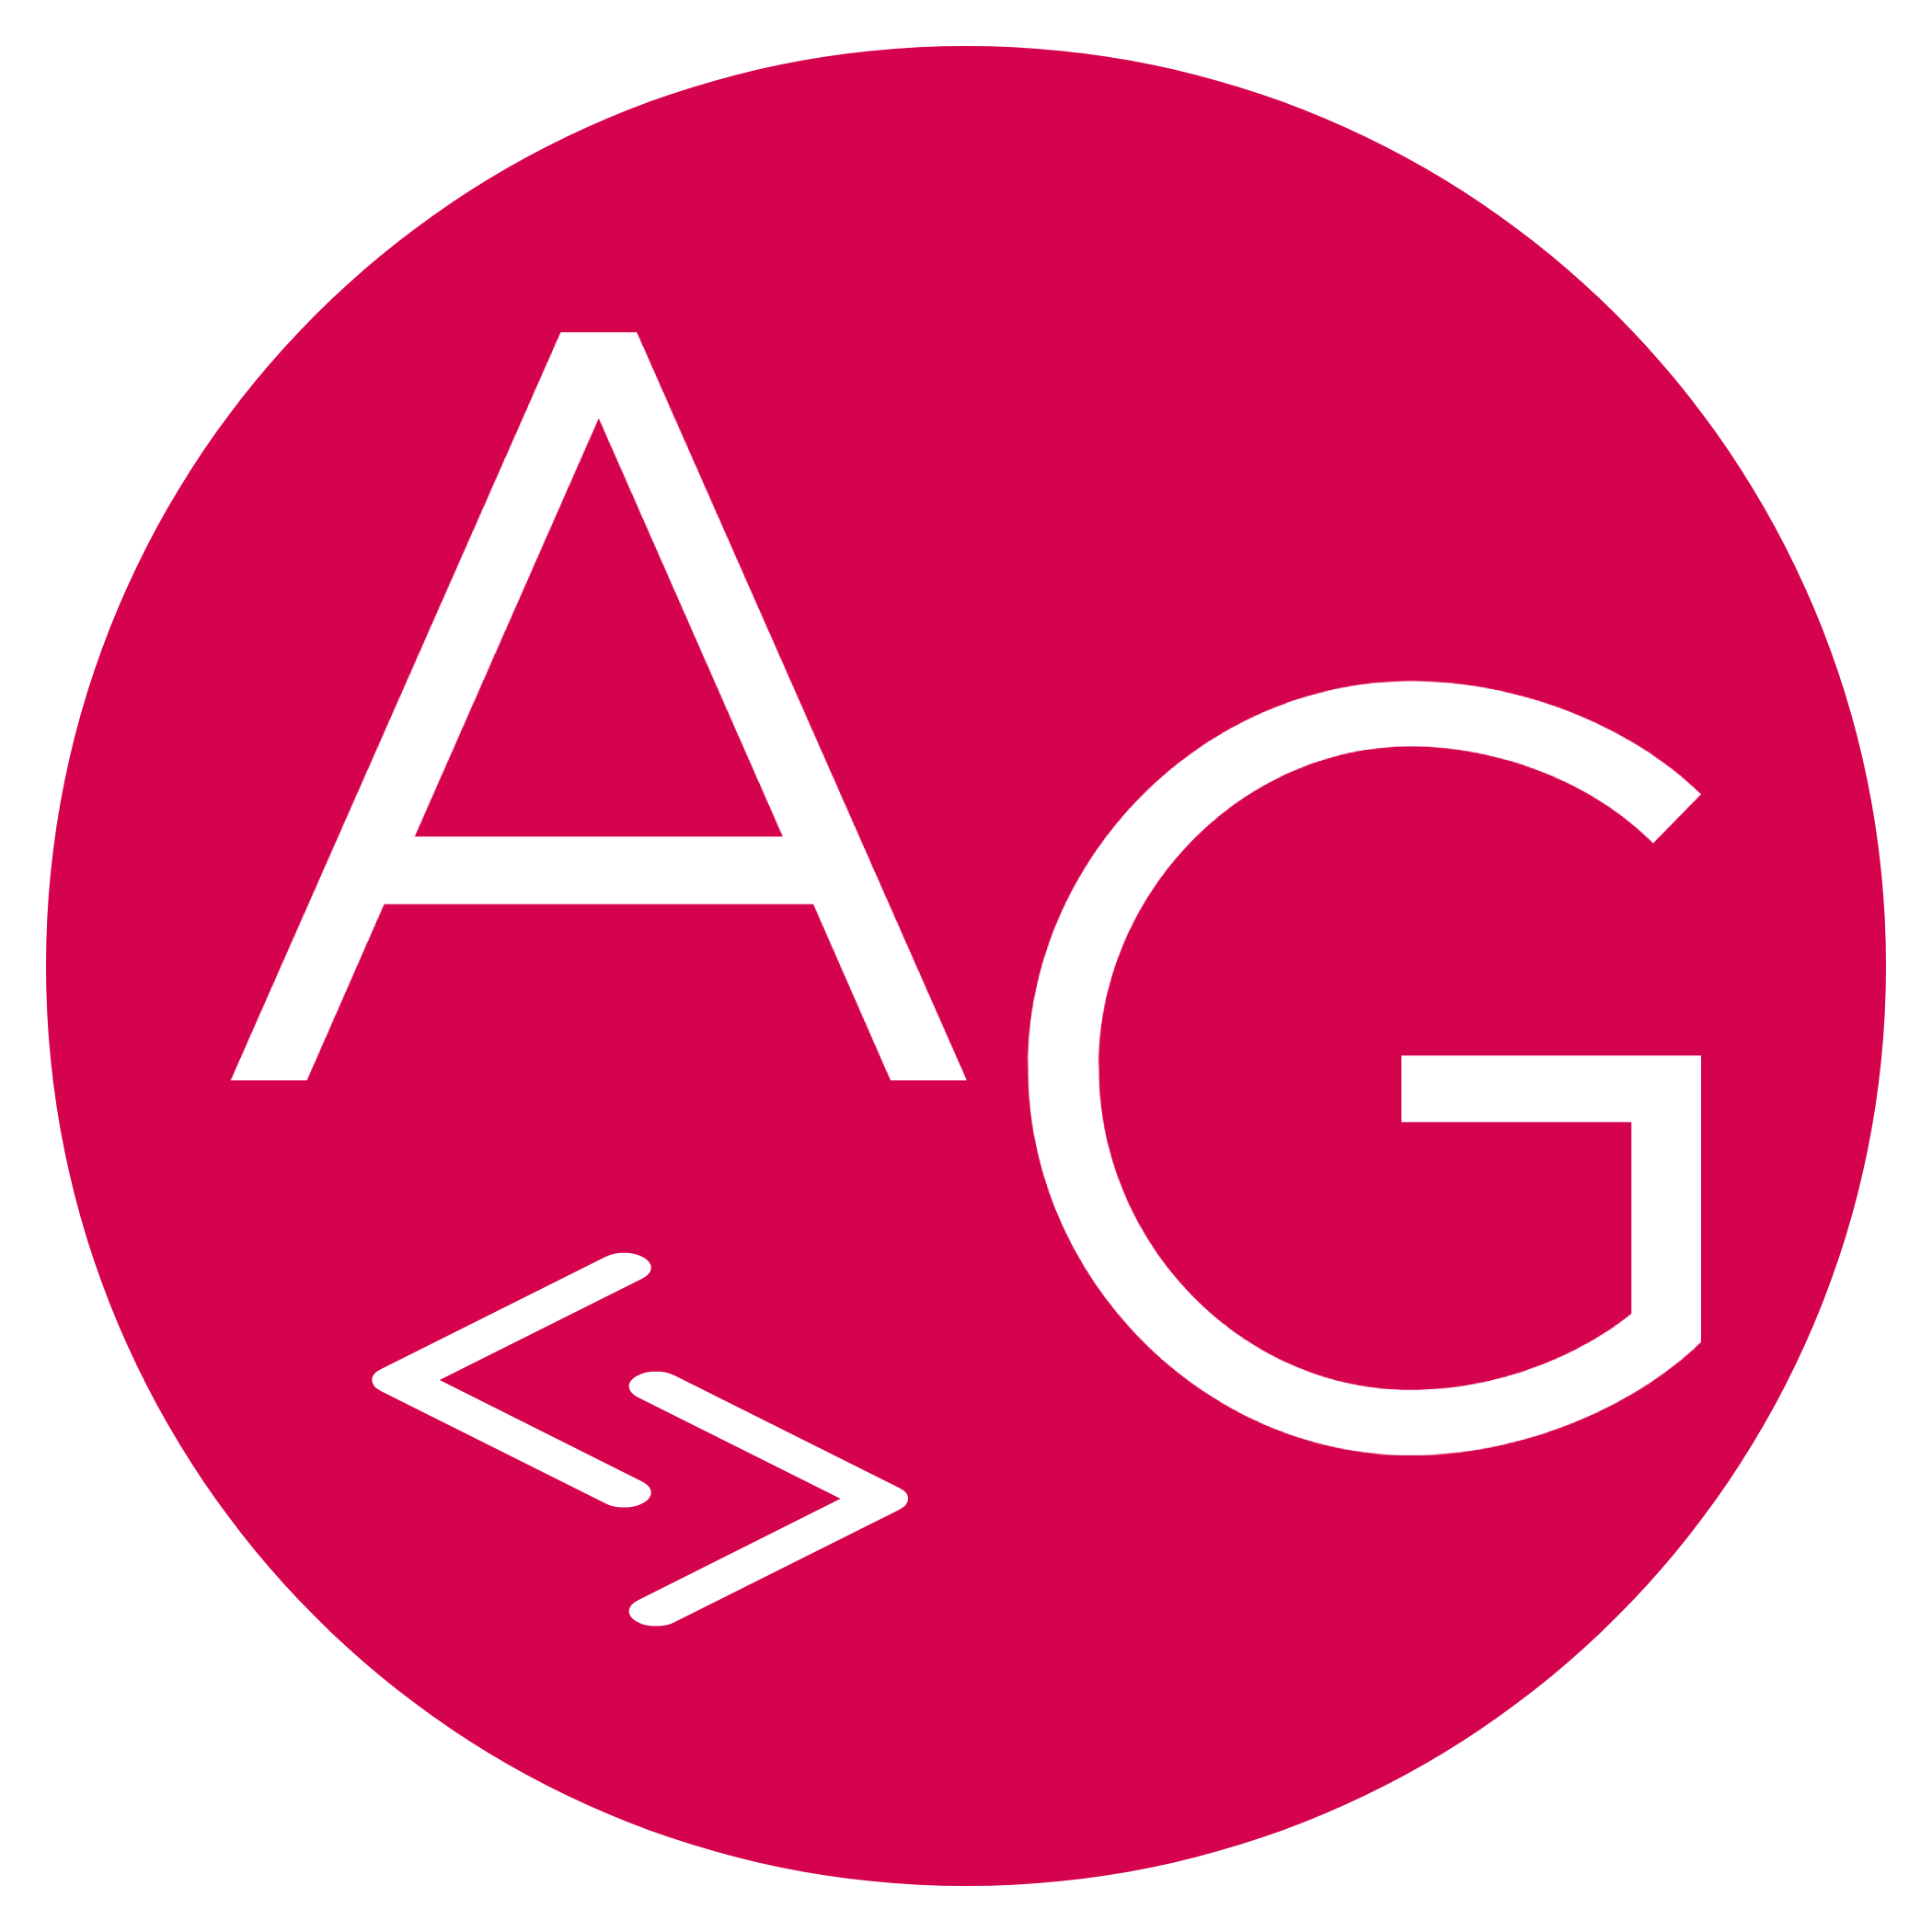 AG Development